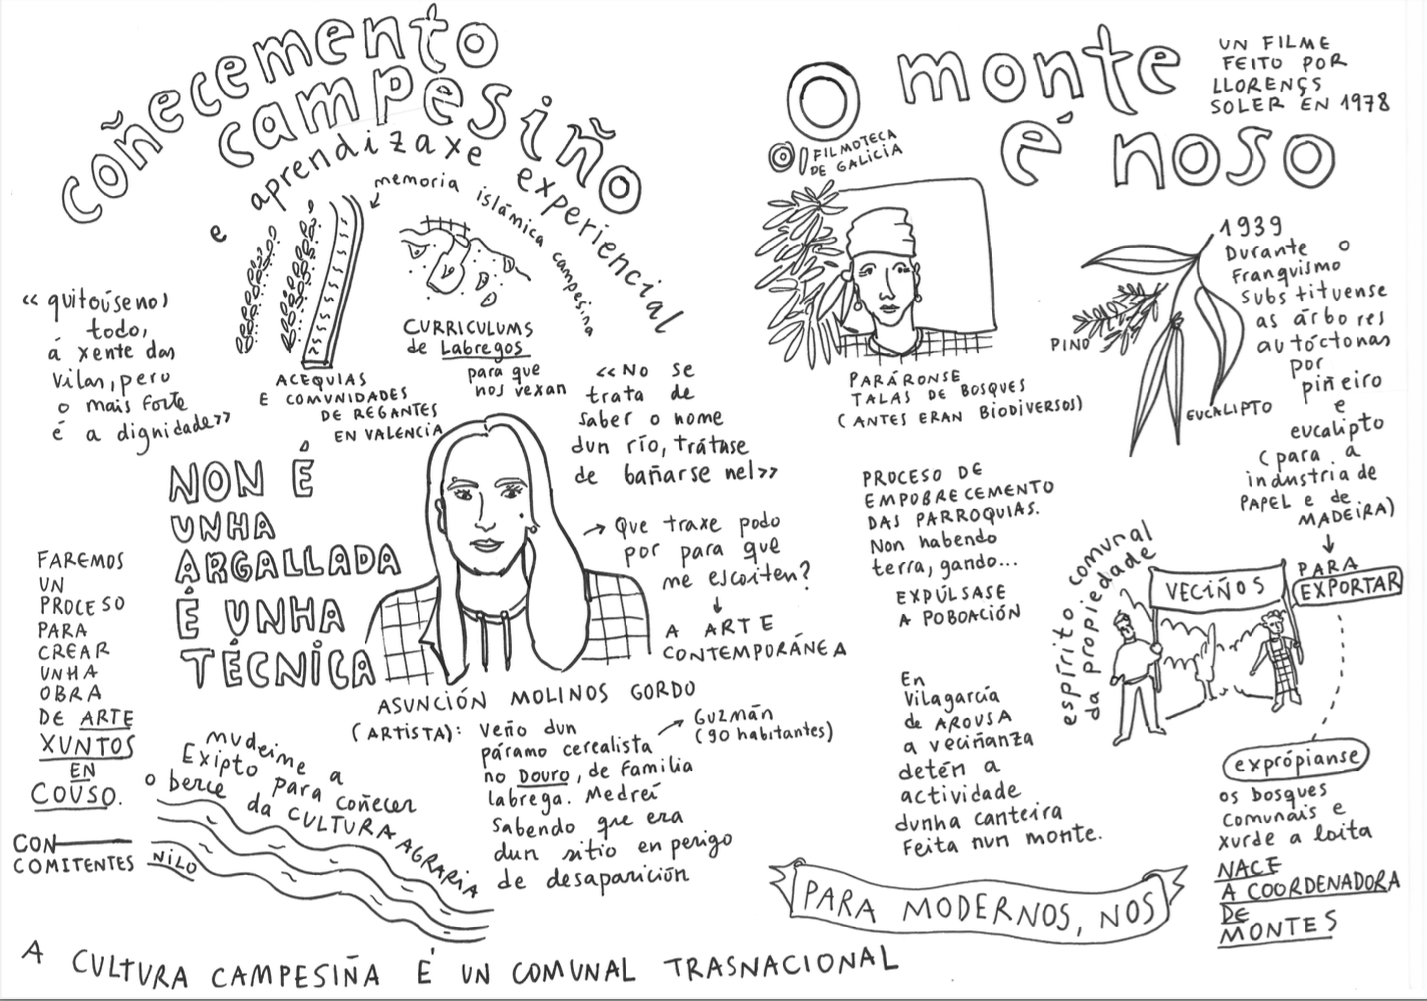 Representación gráfica da presentación de Asunción Molinos Gordo y Natalia Balseiro. (c) Carla Boserman